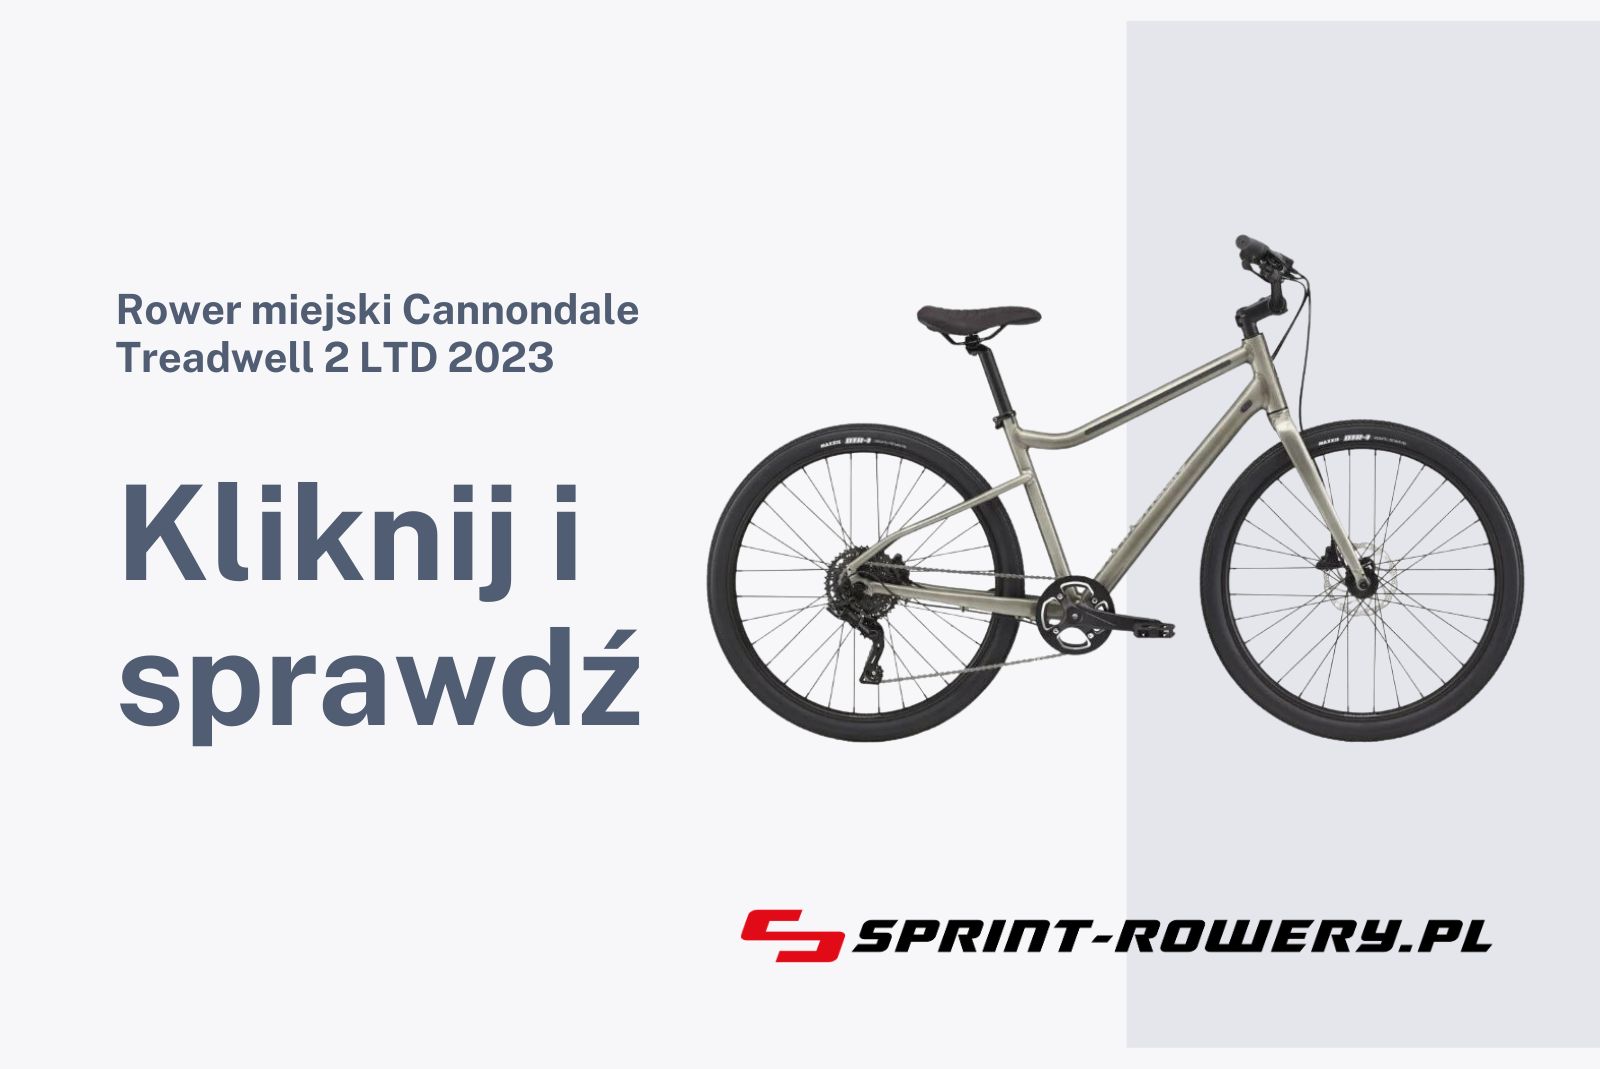 Rower miejski Cannondale Treadwell 2 LTD 2023